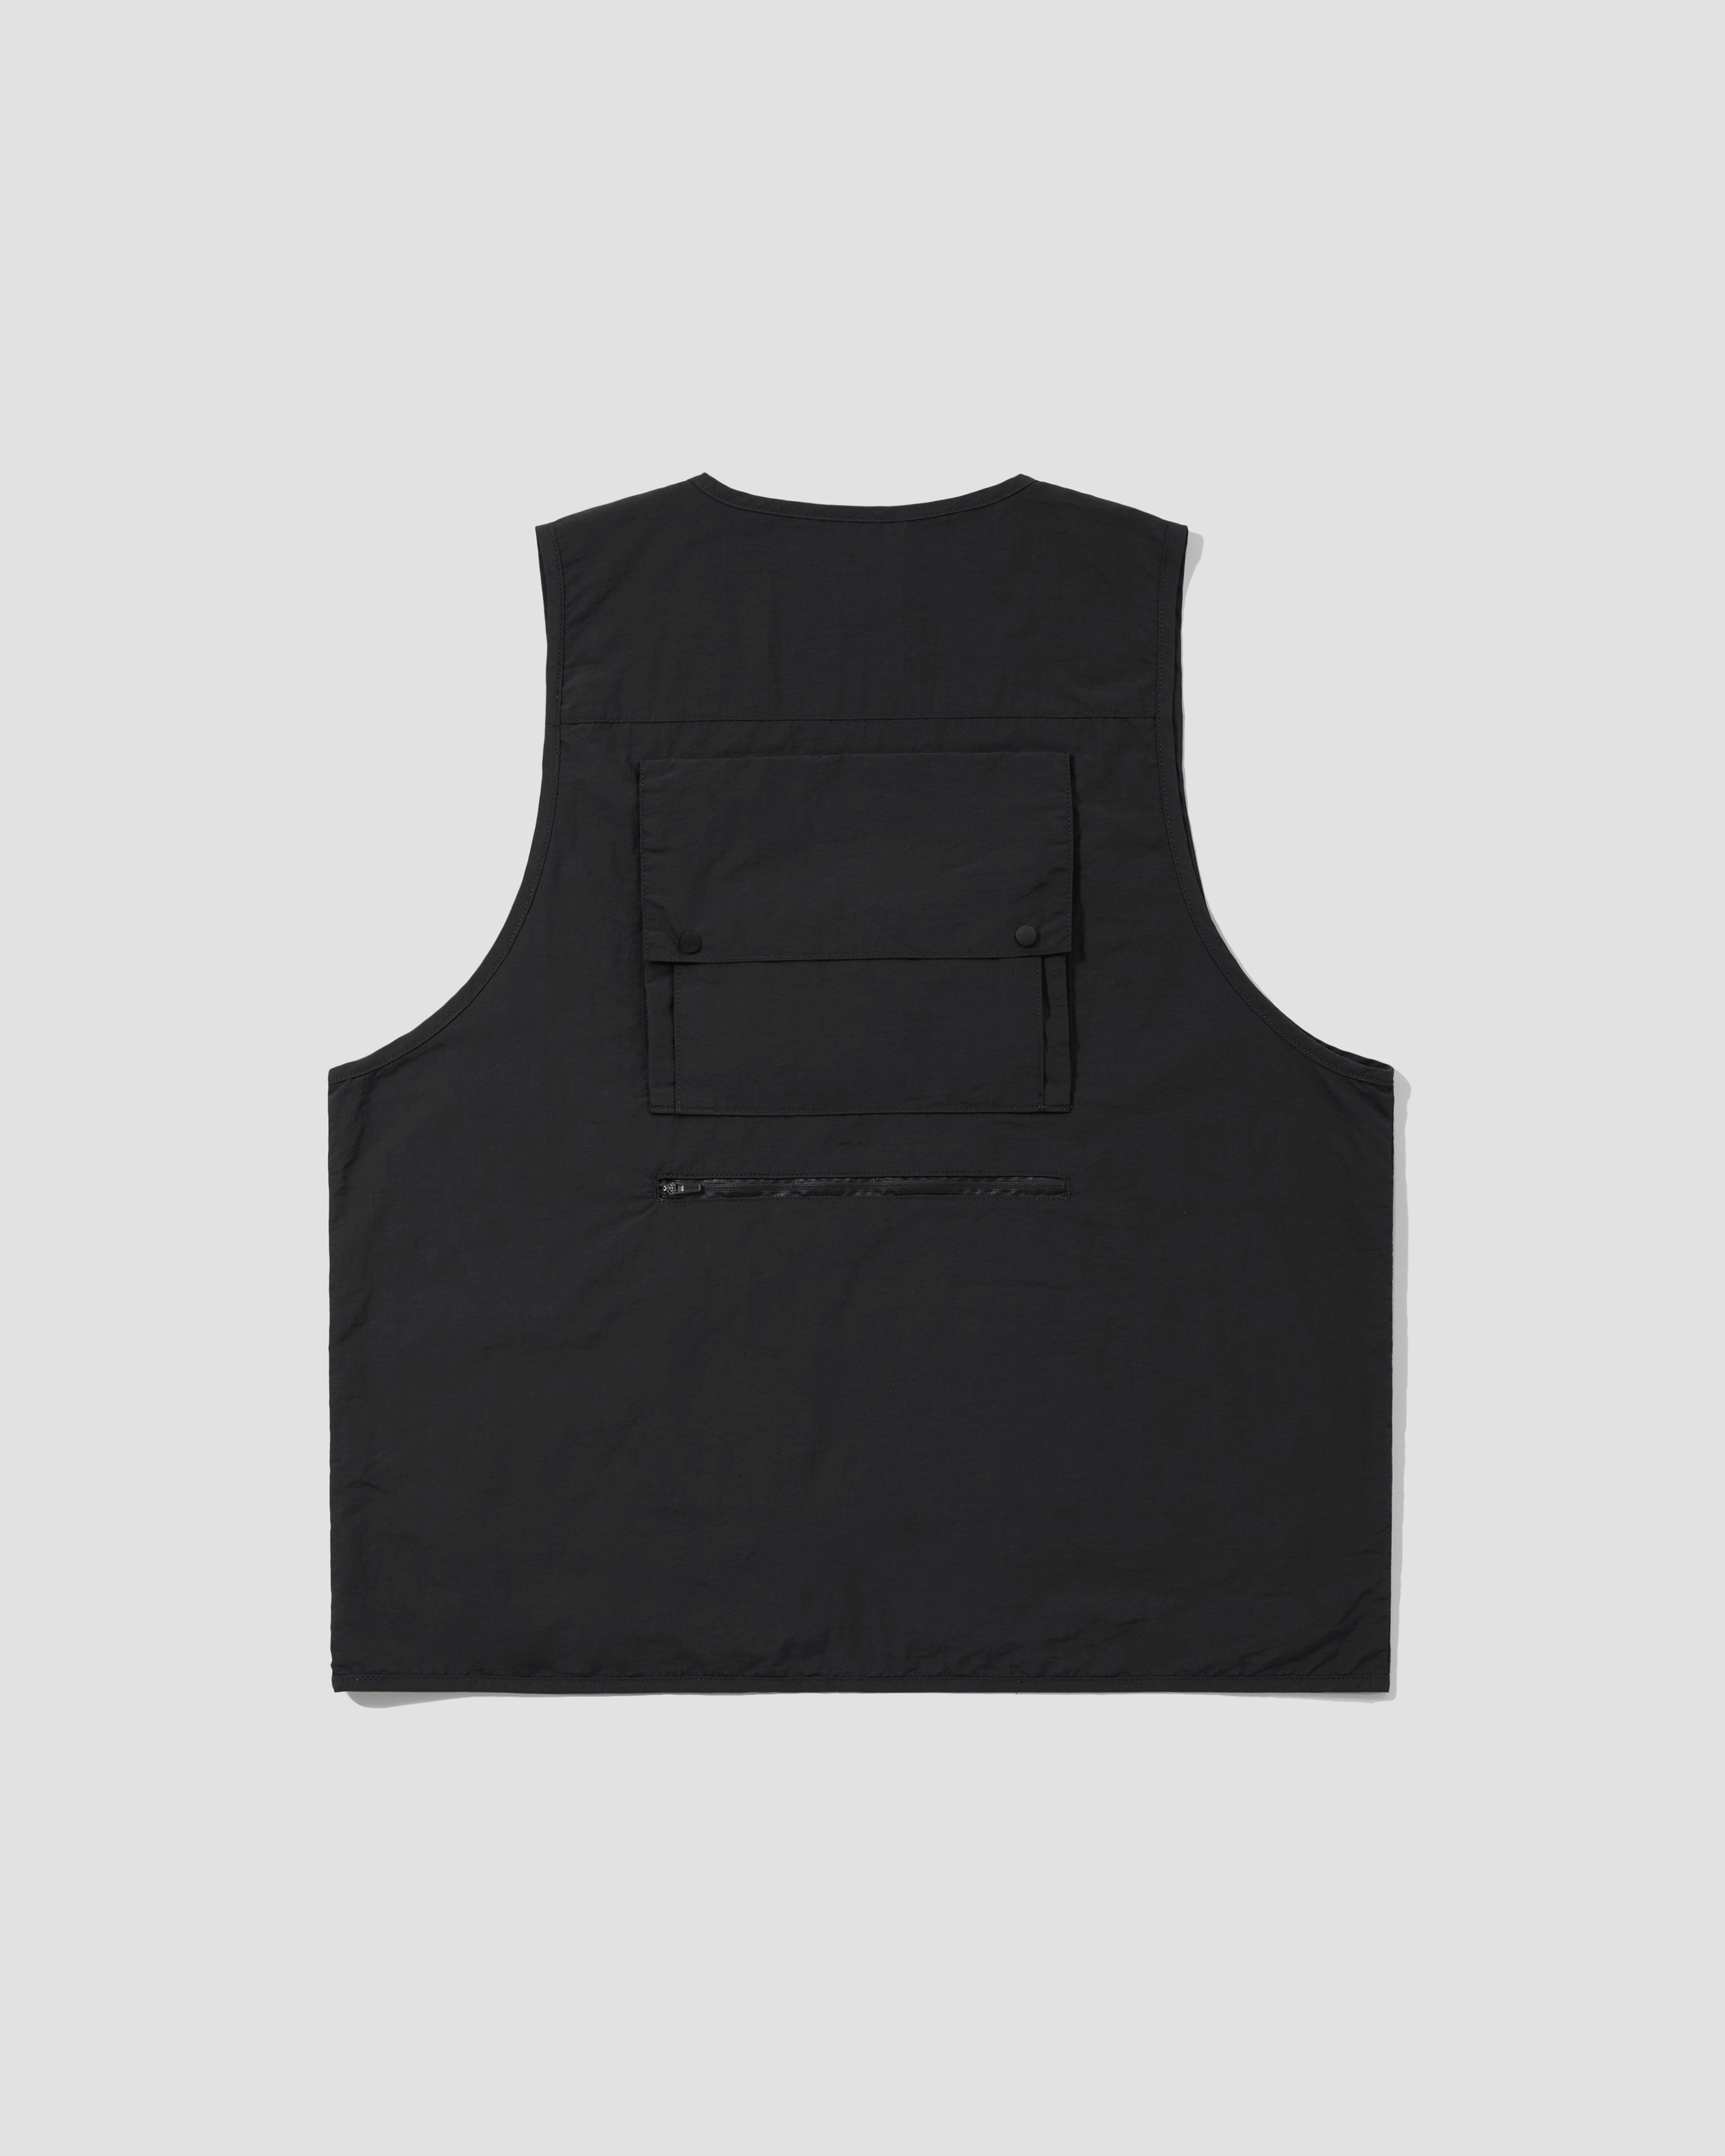 Lightweight Tactical Vest - Black